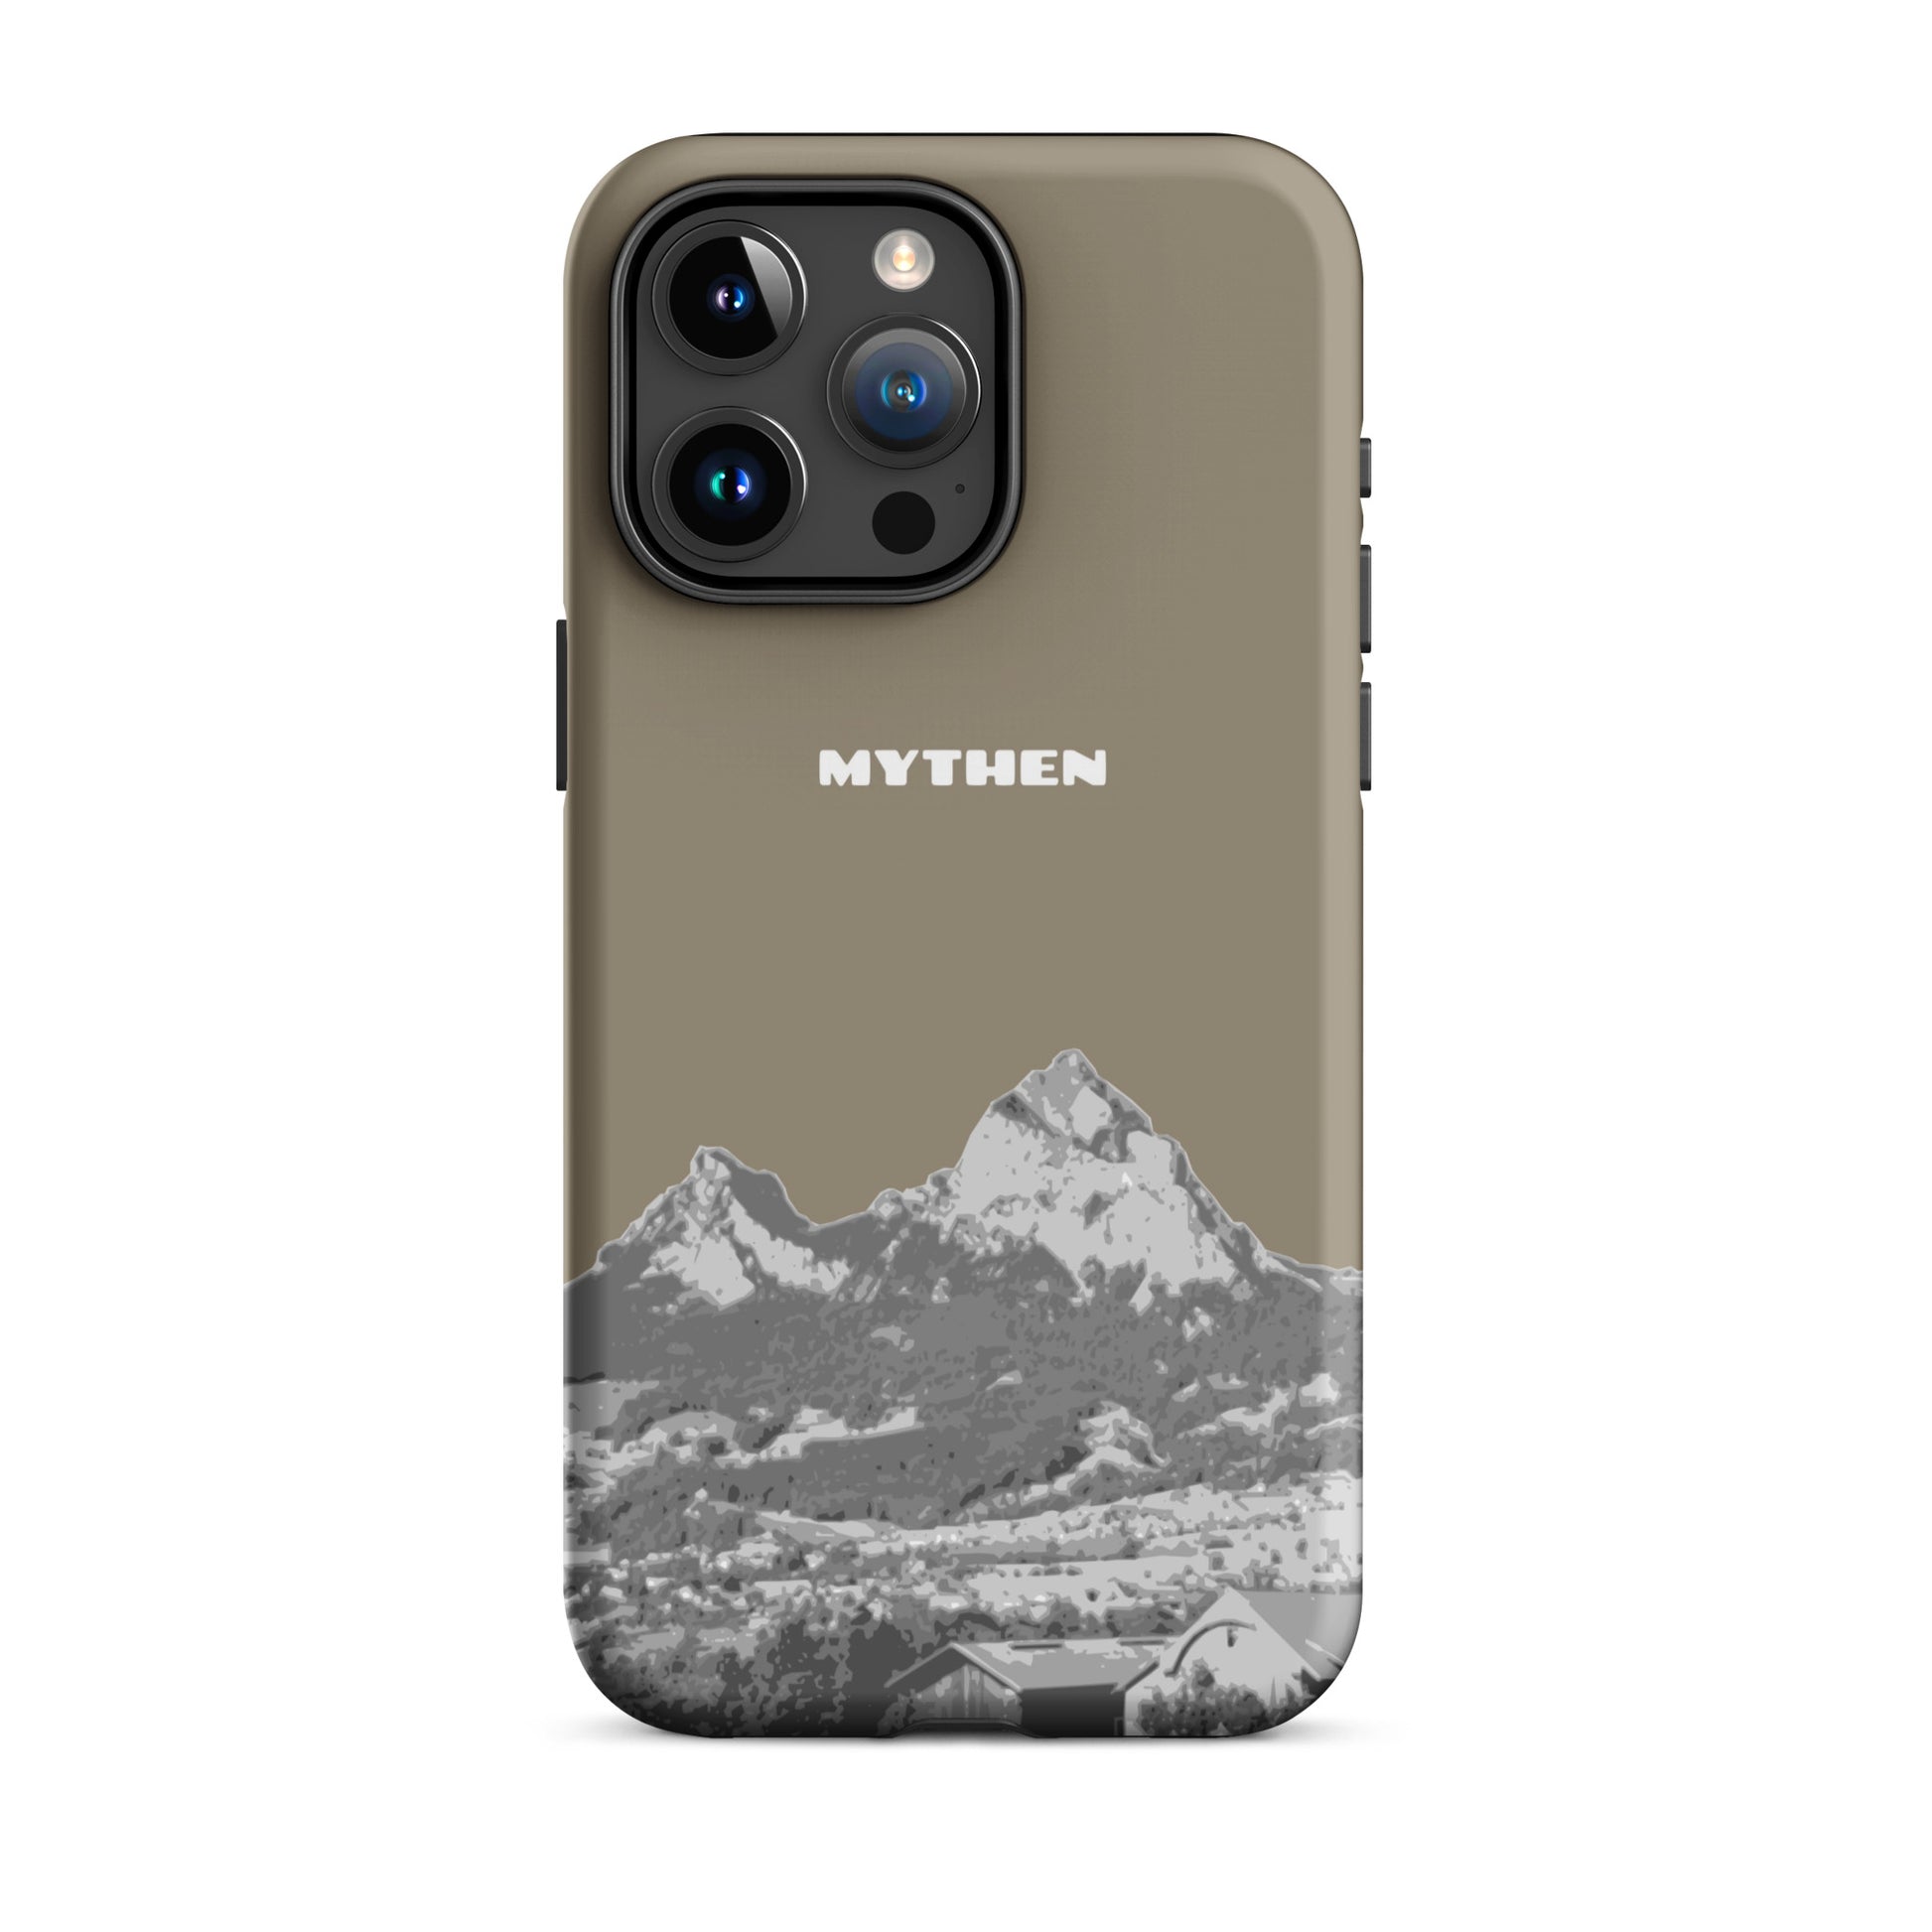 Hülle für das iPhone 15 Pro Max von Apple in der Farbe Graubraun, dass den Grossen Mythen und den Kleinen Mythen bei Schwyz zeigt. 